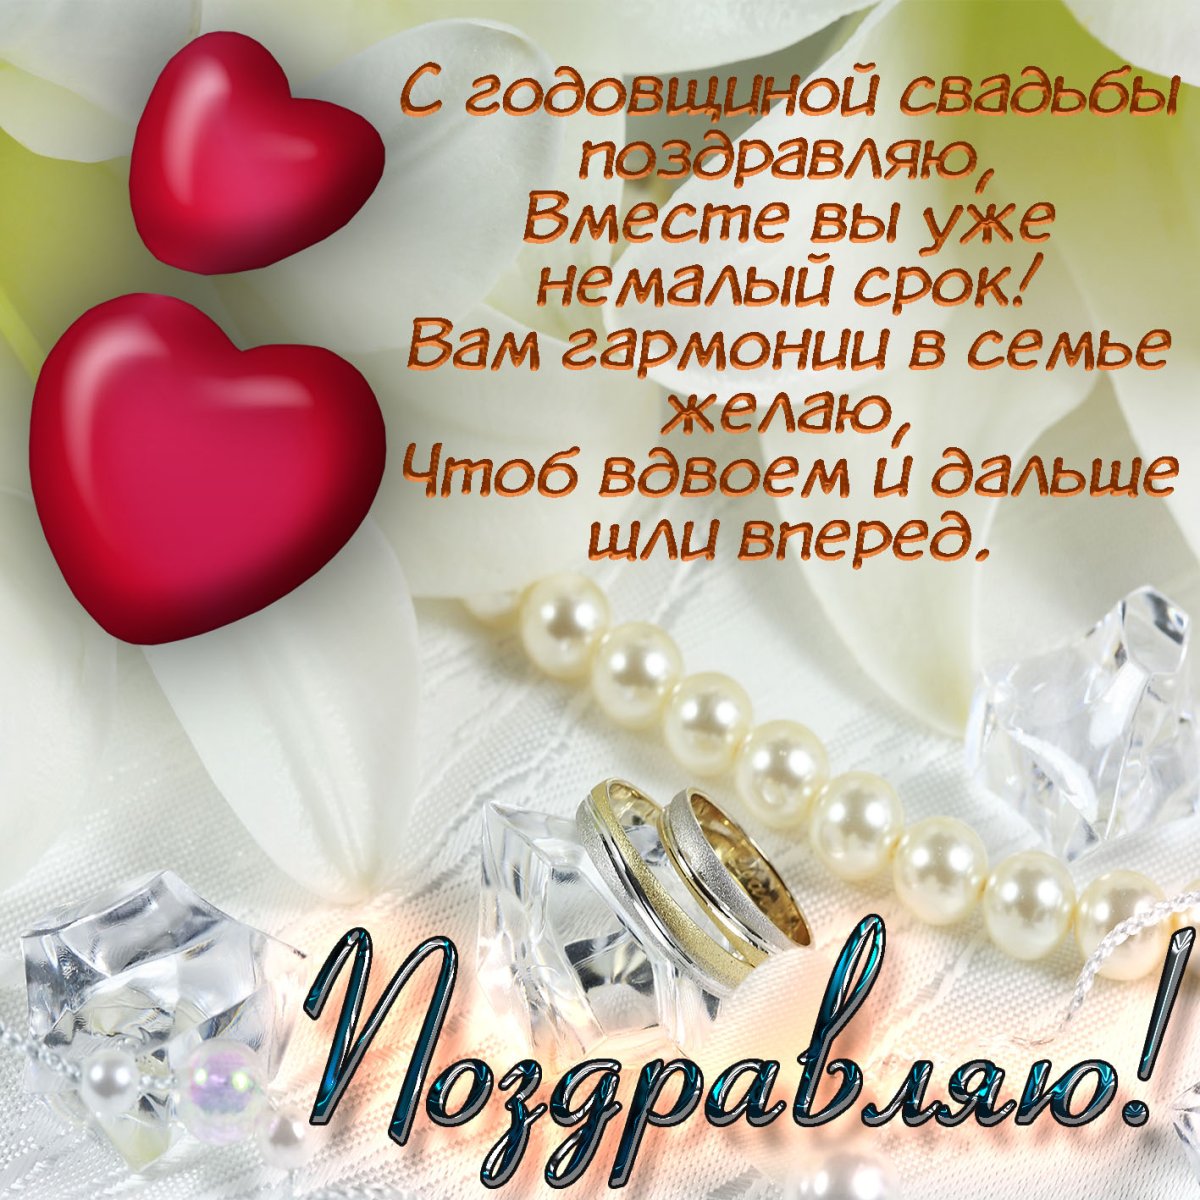 Поздравления жене с годовщиной свадьбы: красивые слова поздравления на paraskevat.ru